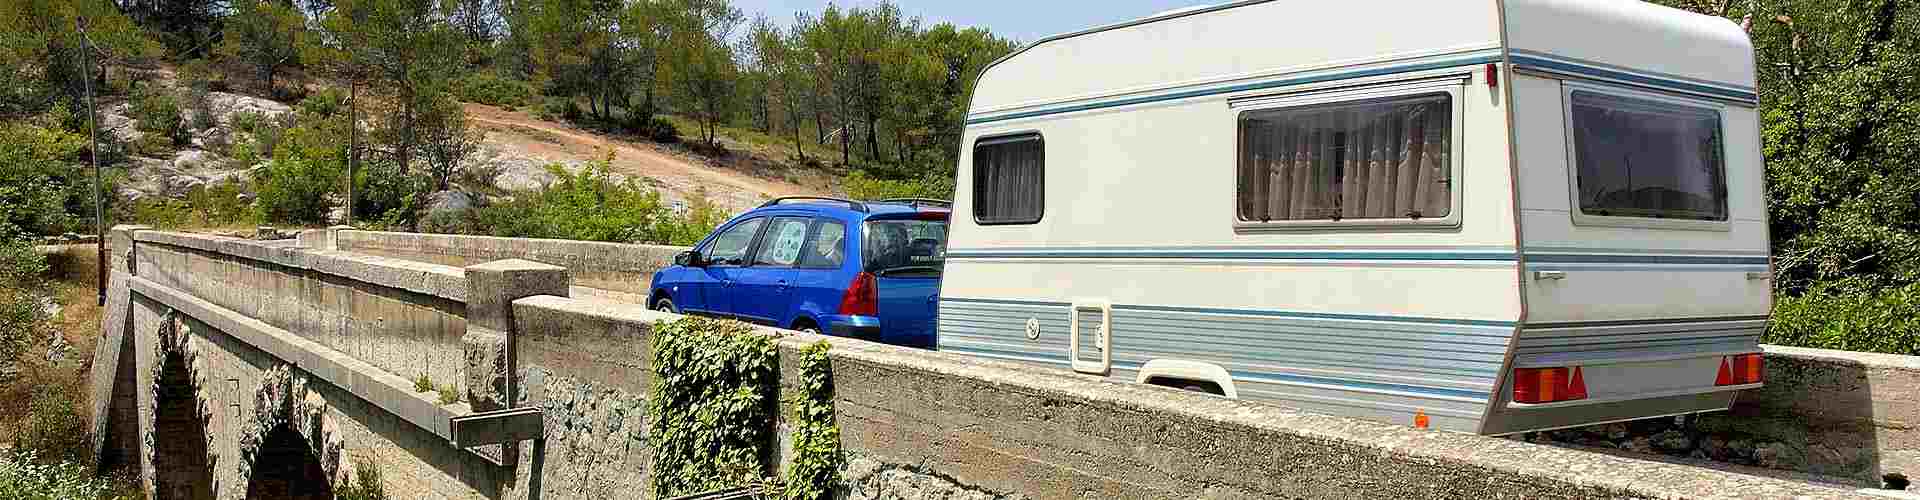 Campings y bungalows en España